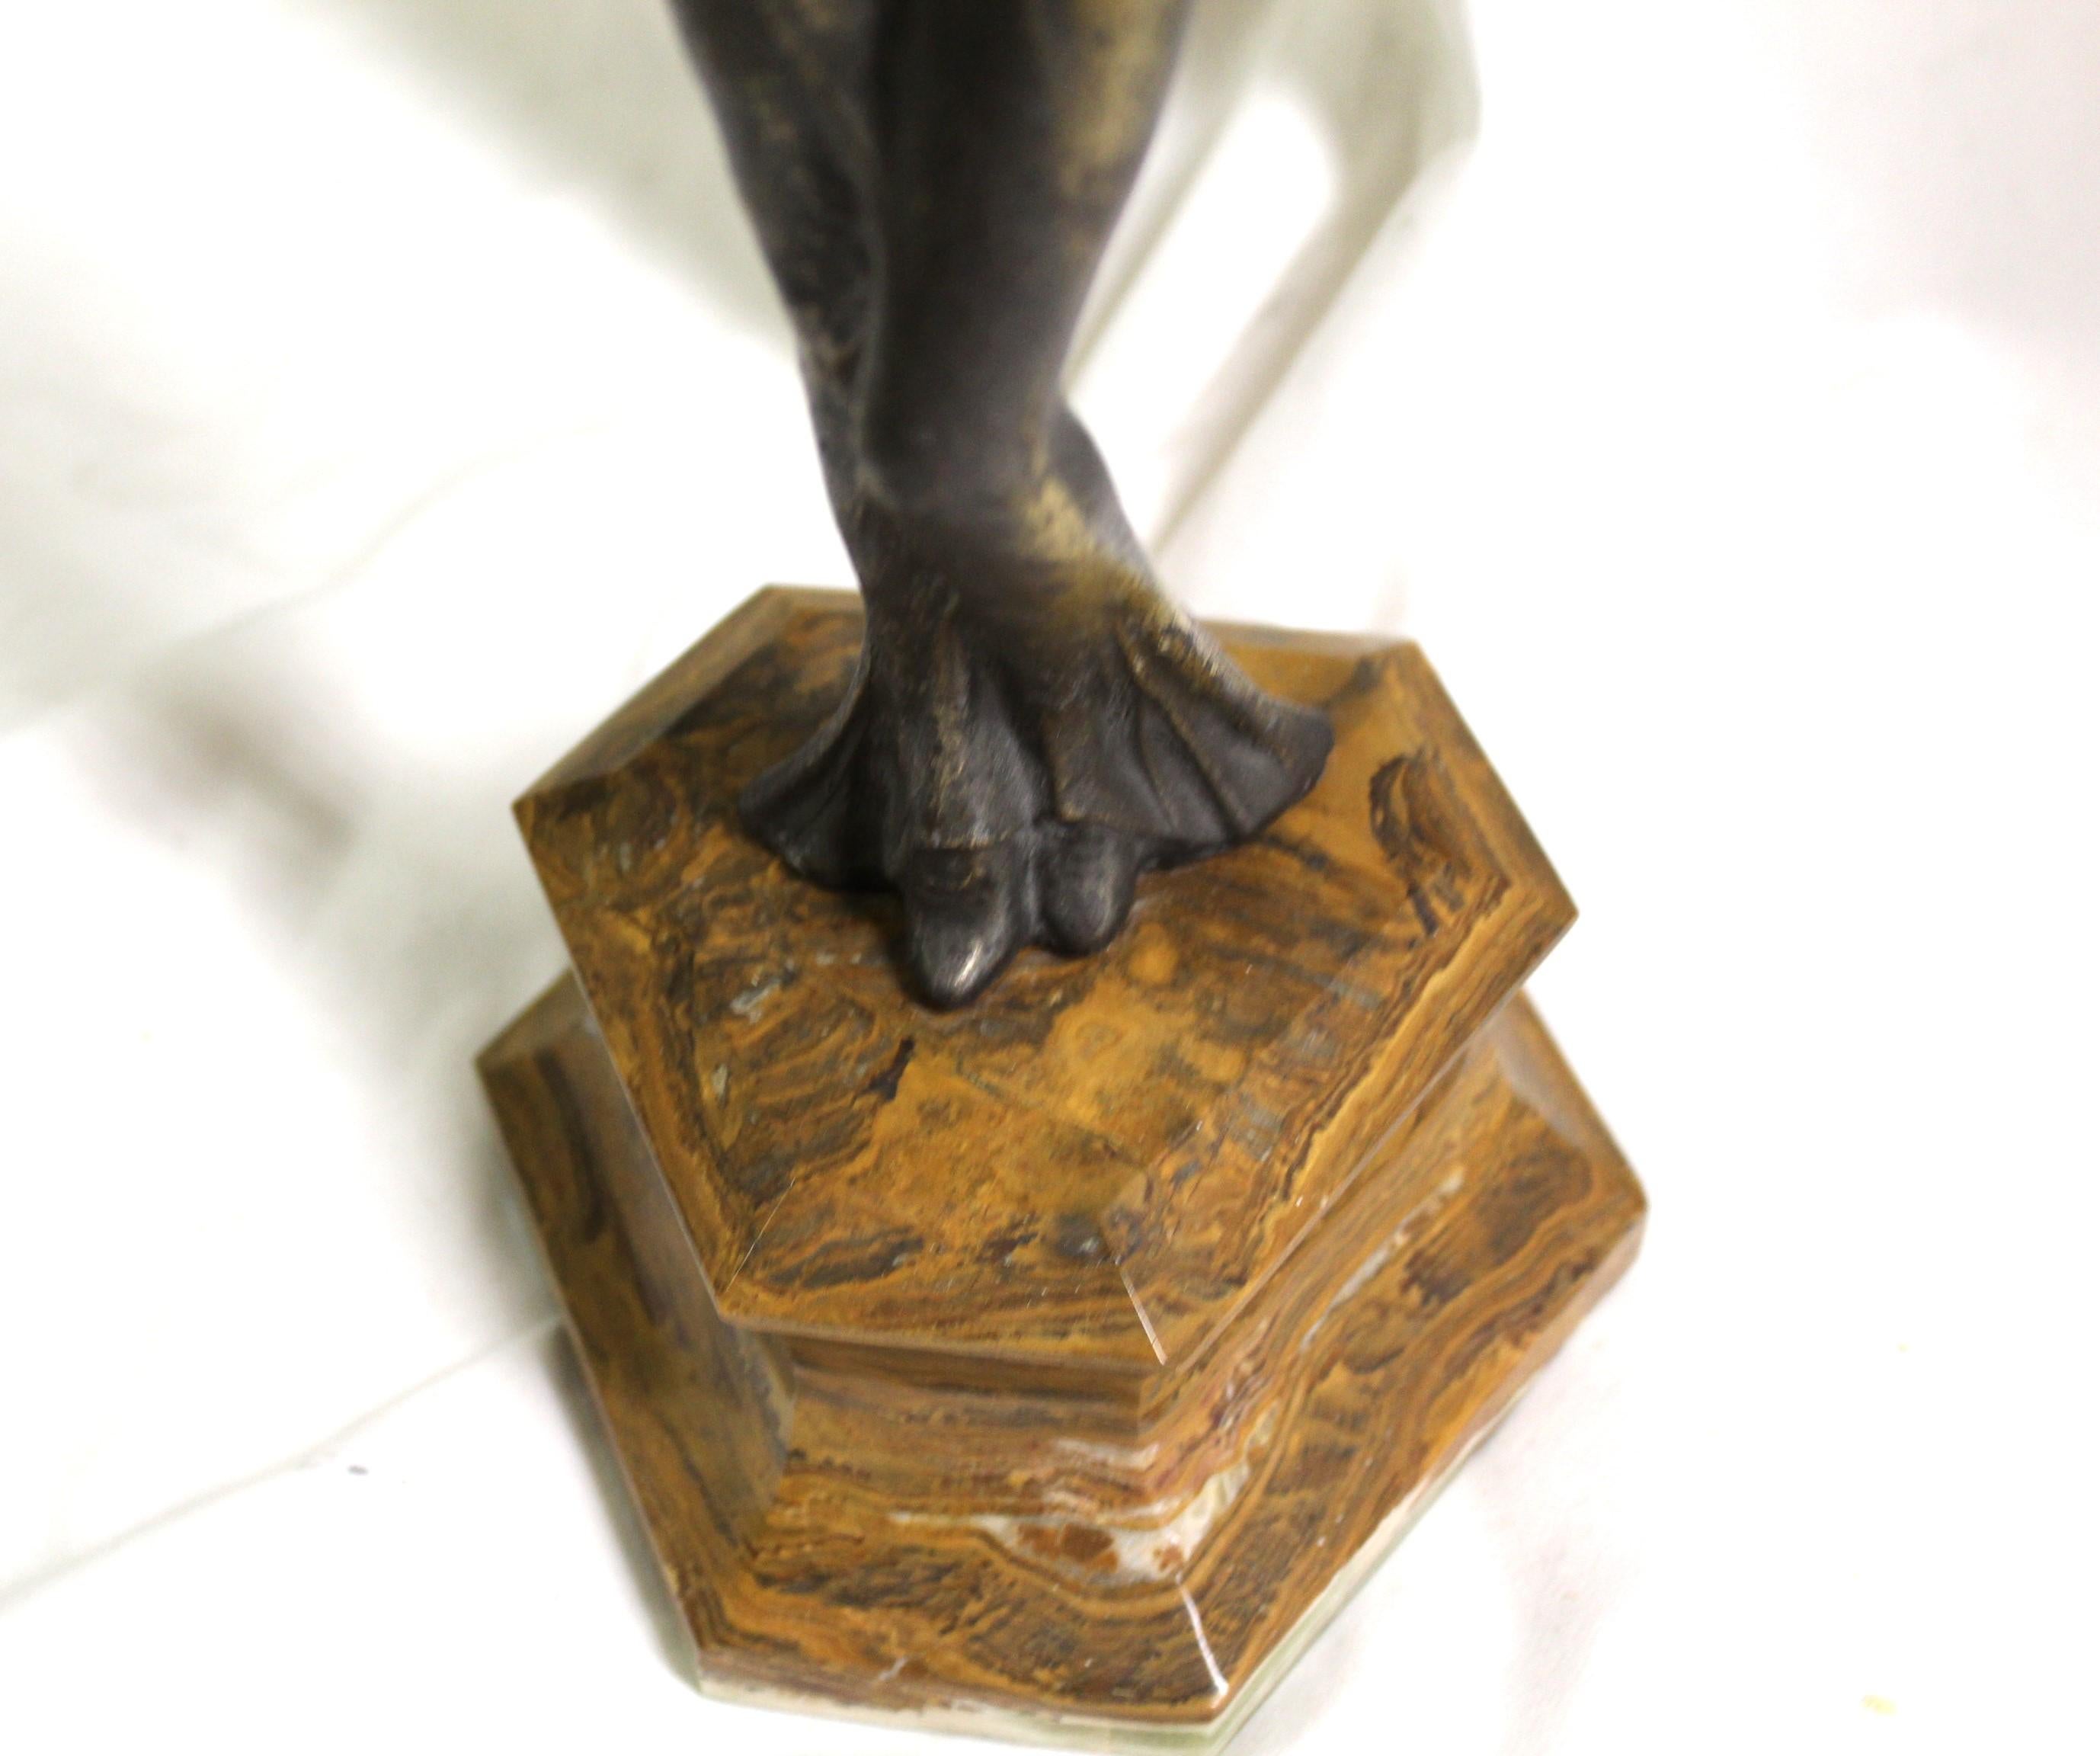 Une figurine très populaire dans le style Art Déco. Une dame debout, les bras tendus, debout sur une base en marbre brun à trois côtés. Coulée en métal blanc avec une finition patinée bronze . Les mains et la tête sont en (Ivorine). Je crois que son